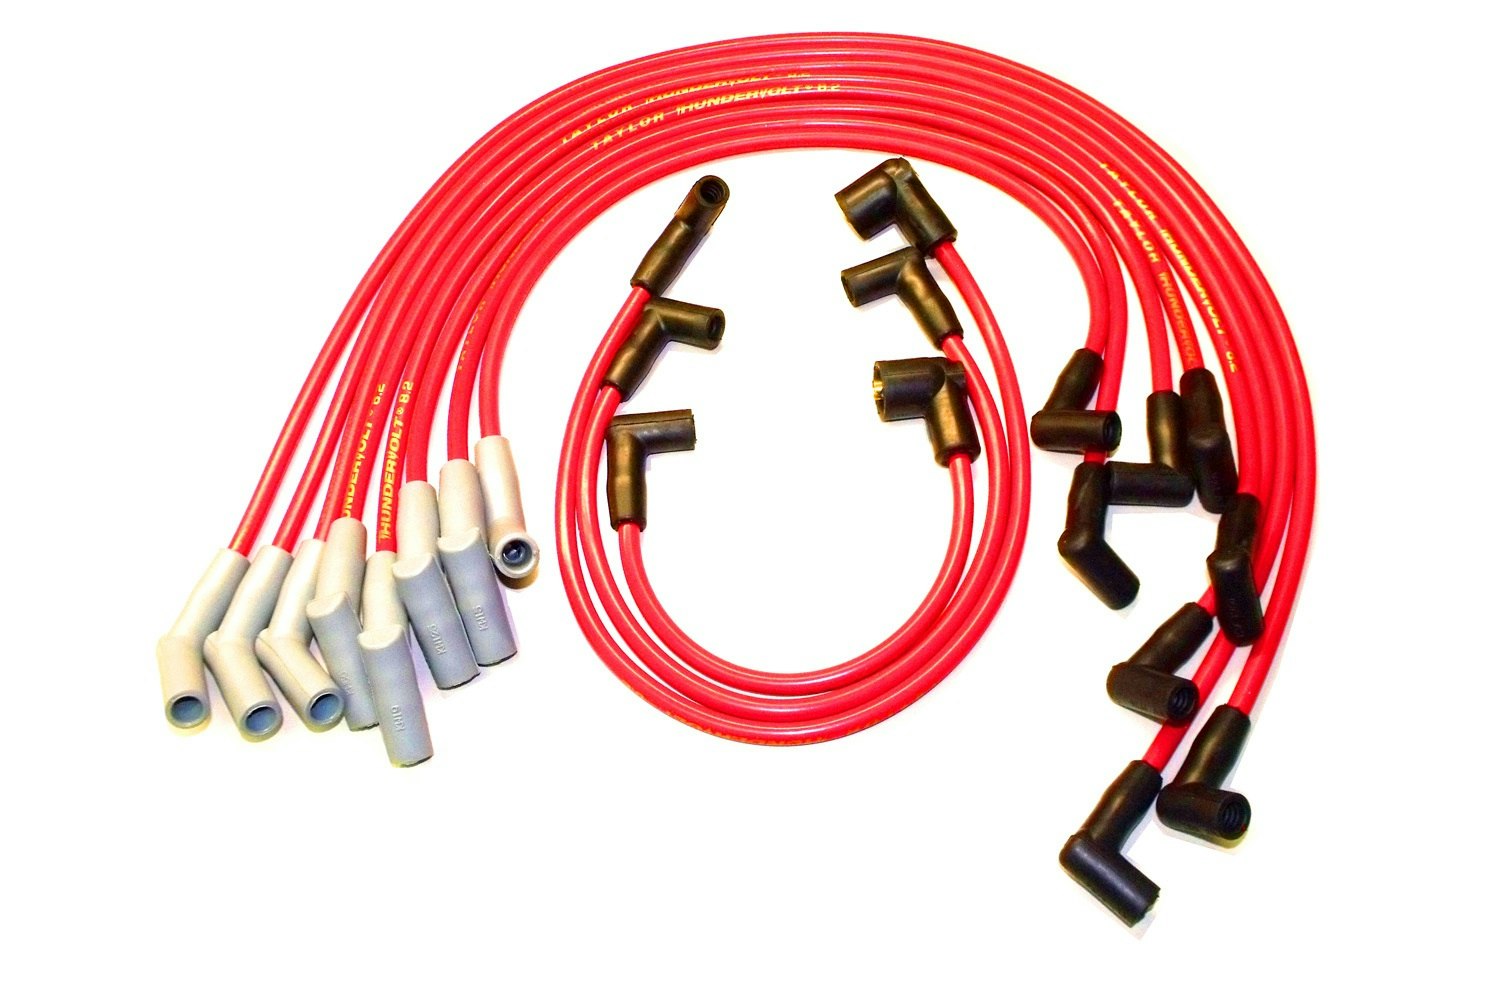 Taylor 83055 ThunderVolt Spark Plug Wires 8.2mm 